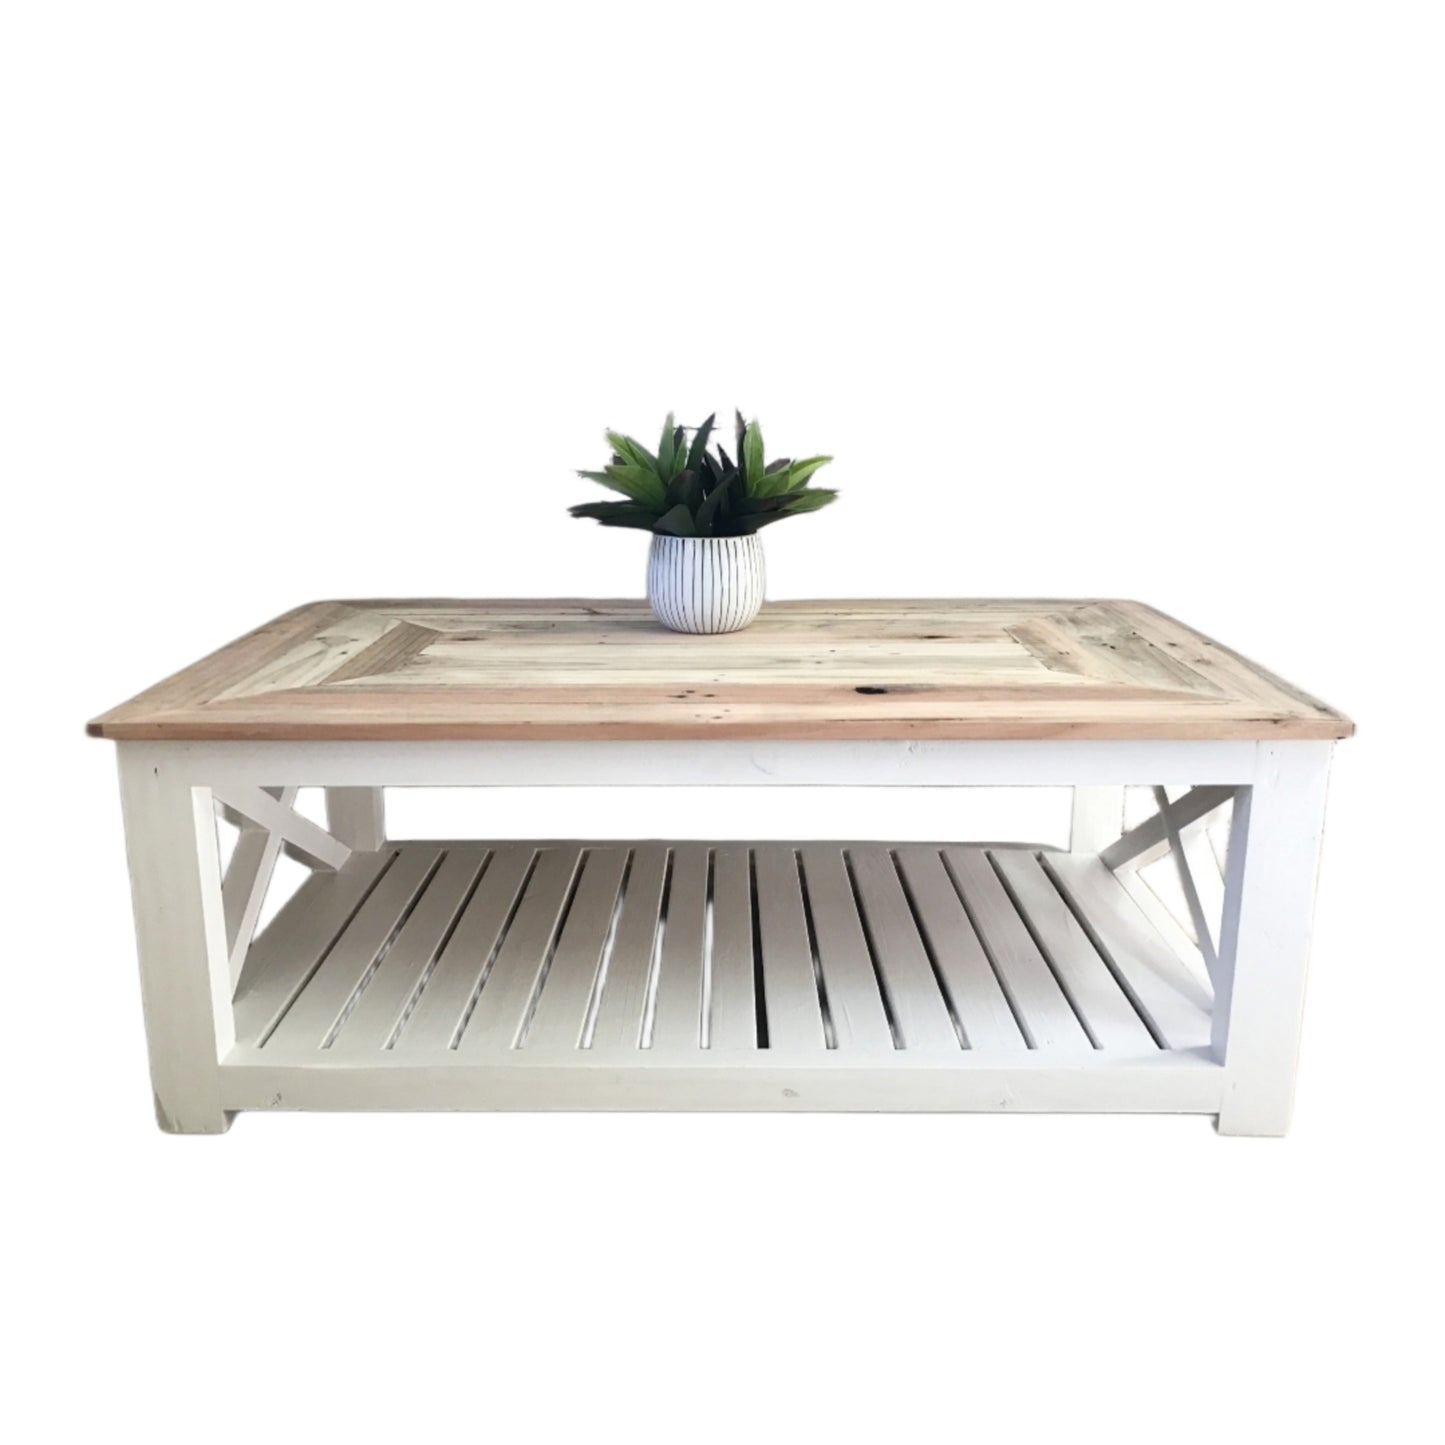 X-Coffee Table - Furniture